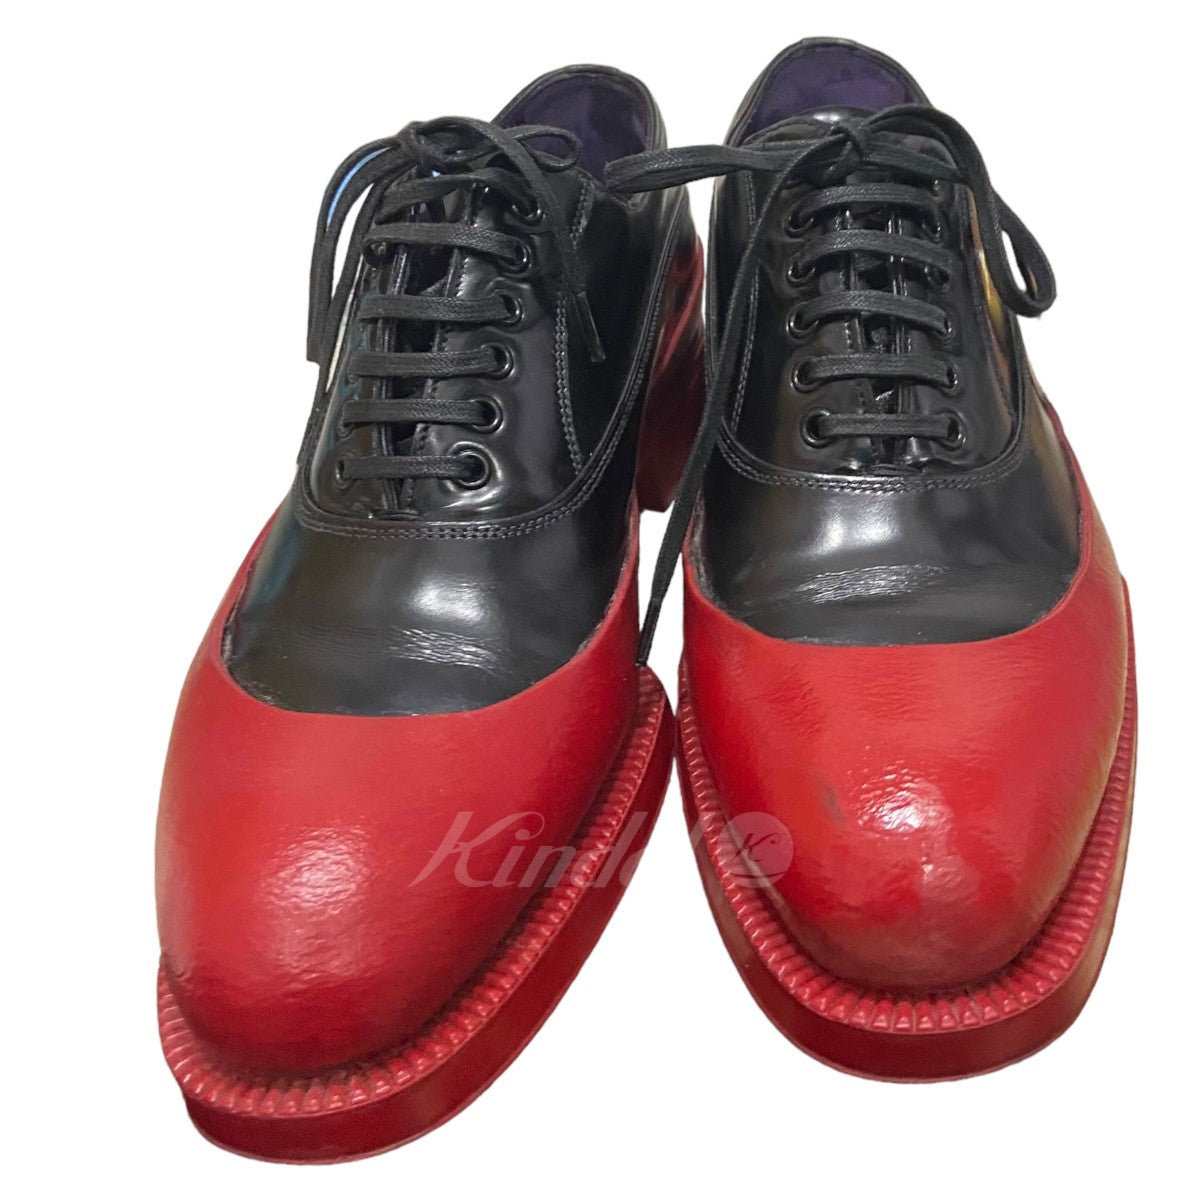 22,500円12aw prada rubber leather shoes 27.0